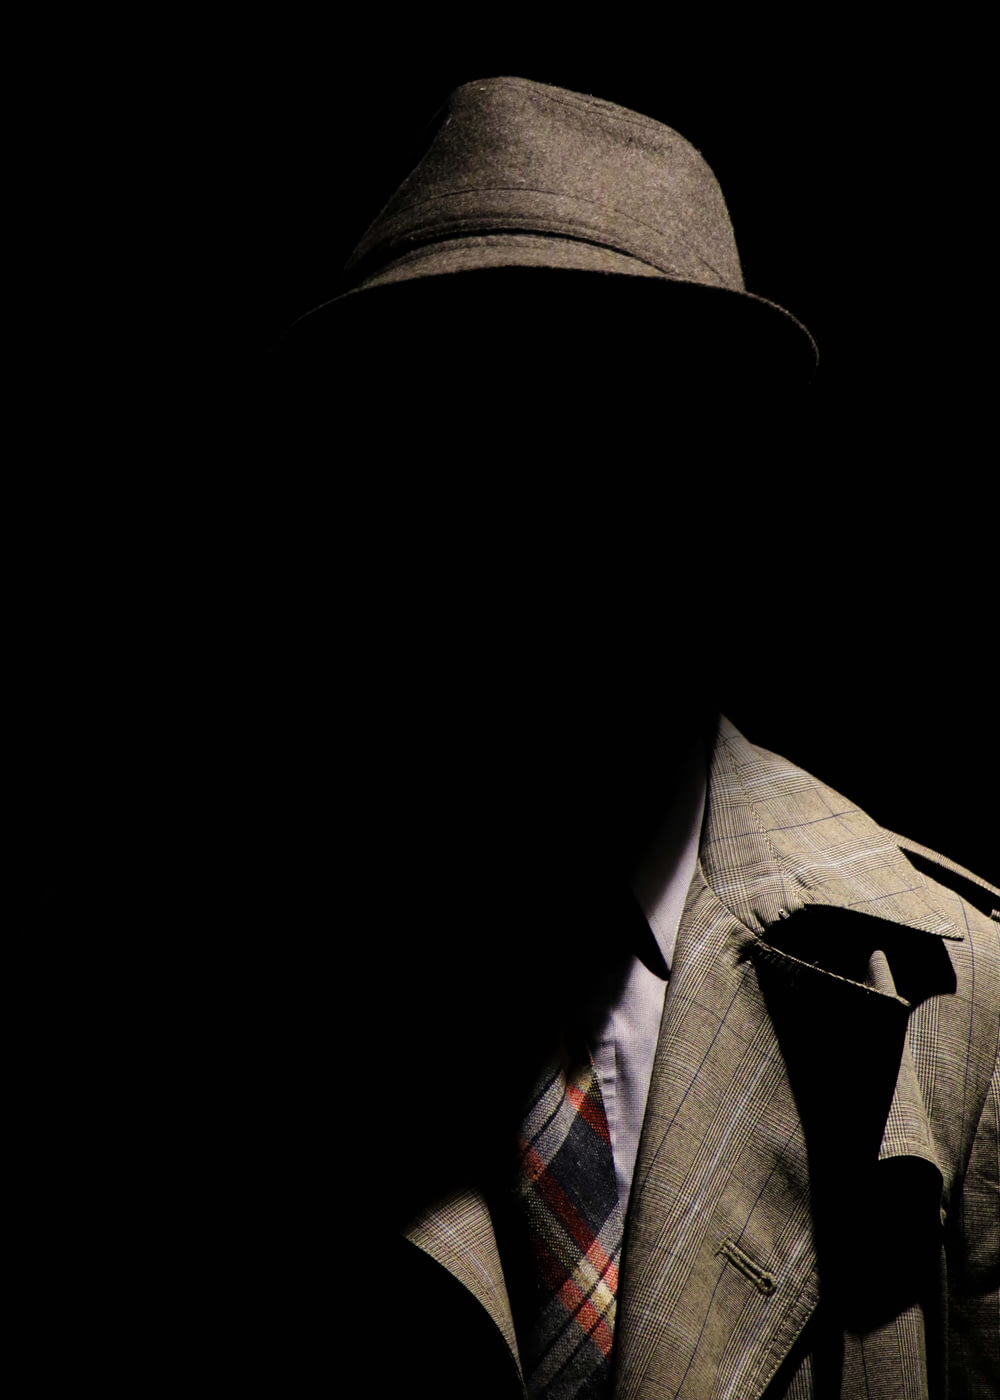 灰色のチェック柄のノッチ付きラペルスーツジャケットと灰色の帽子をかぶった人が顔を隠している